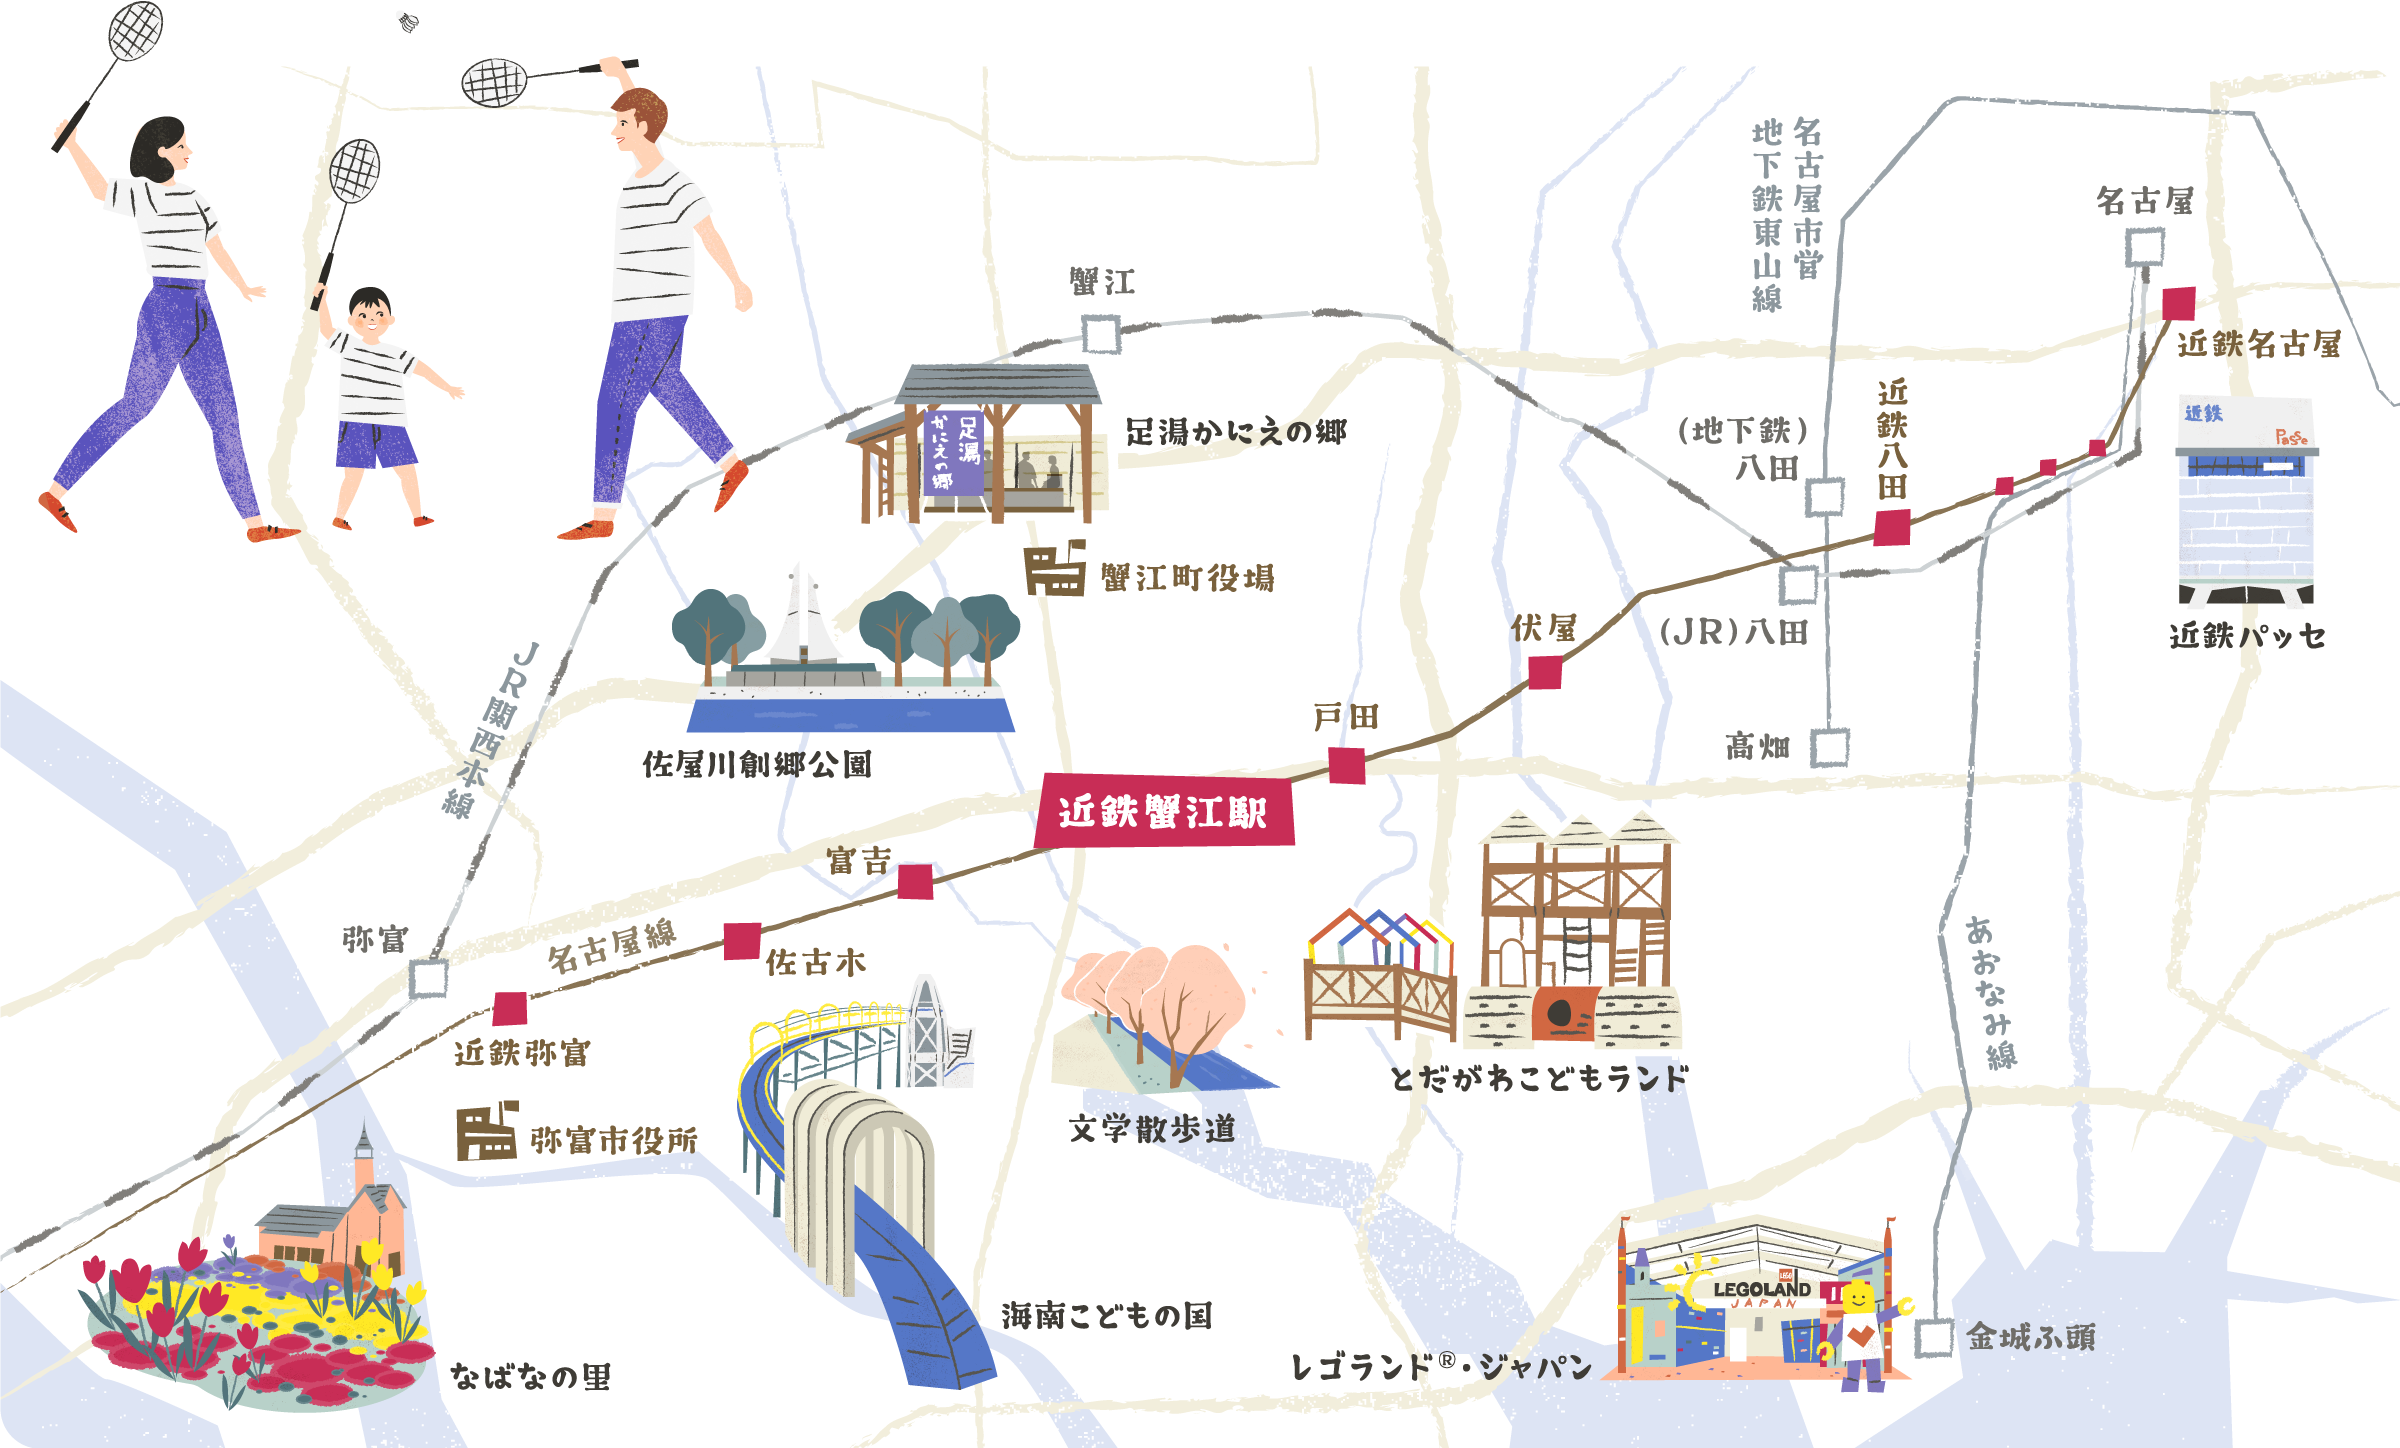 名古屋西部エリア周辺イラストマップ